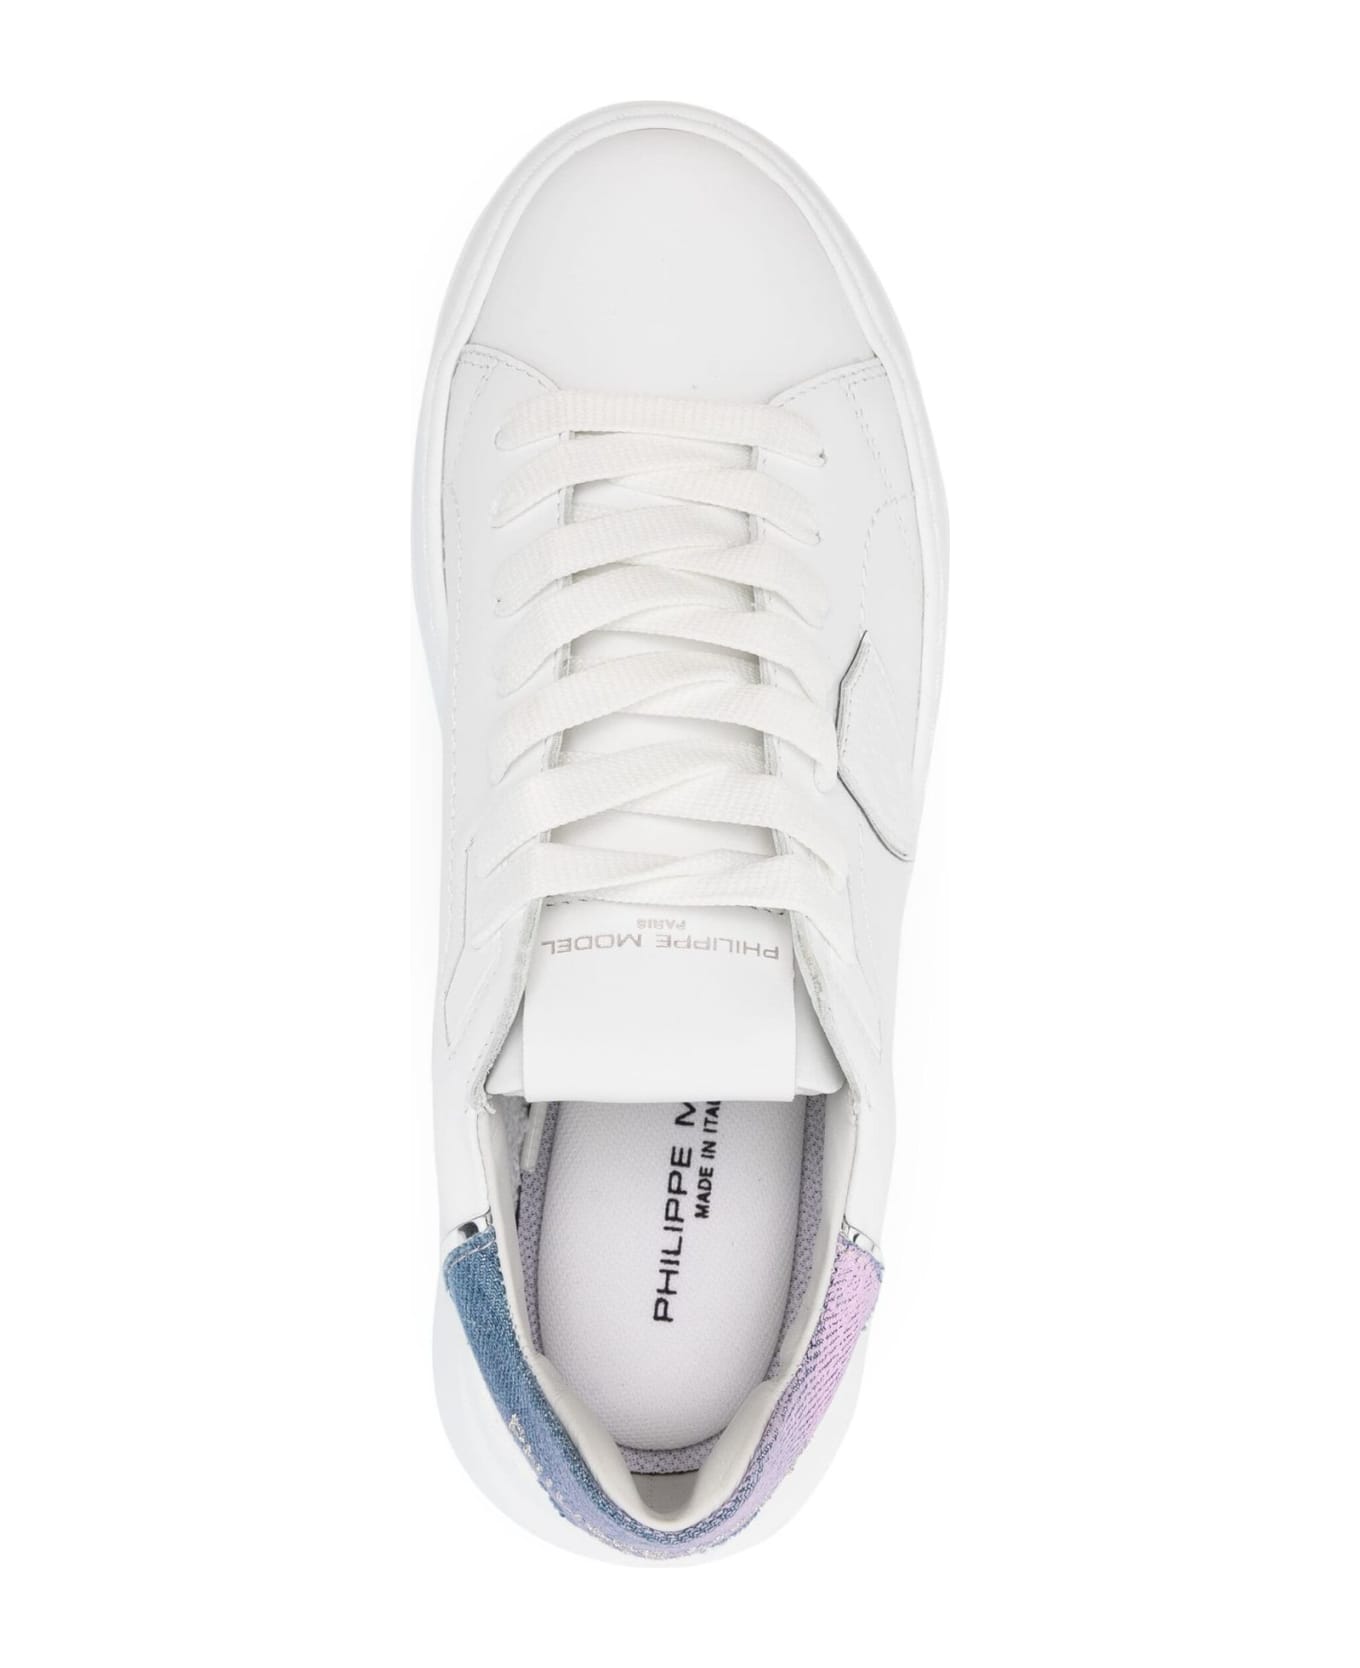 Philippe Model Tres Temple Sneaker White And Light Blue - White スニーカー